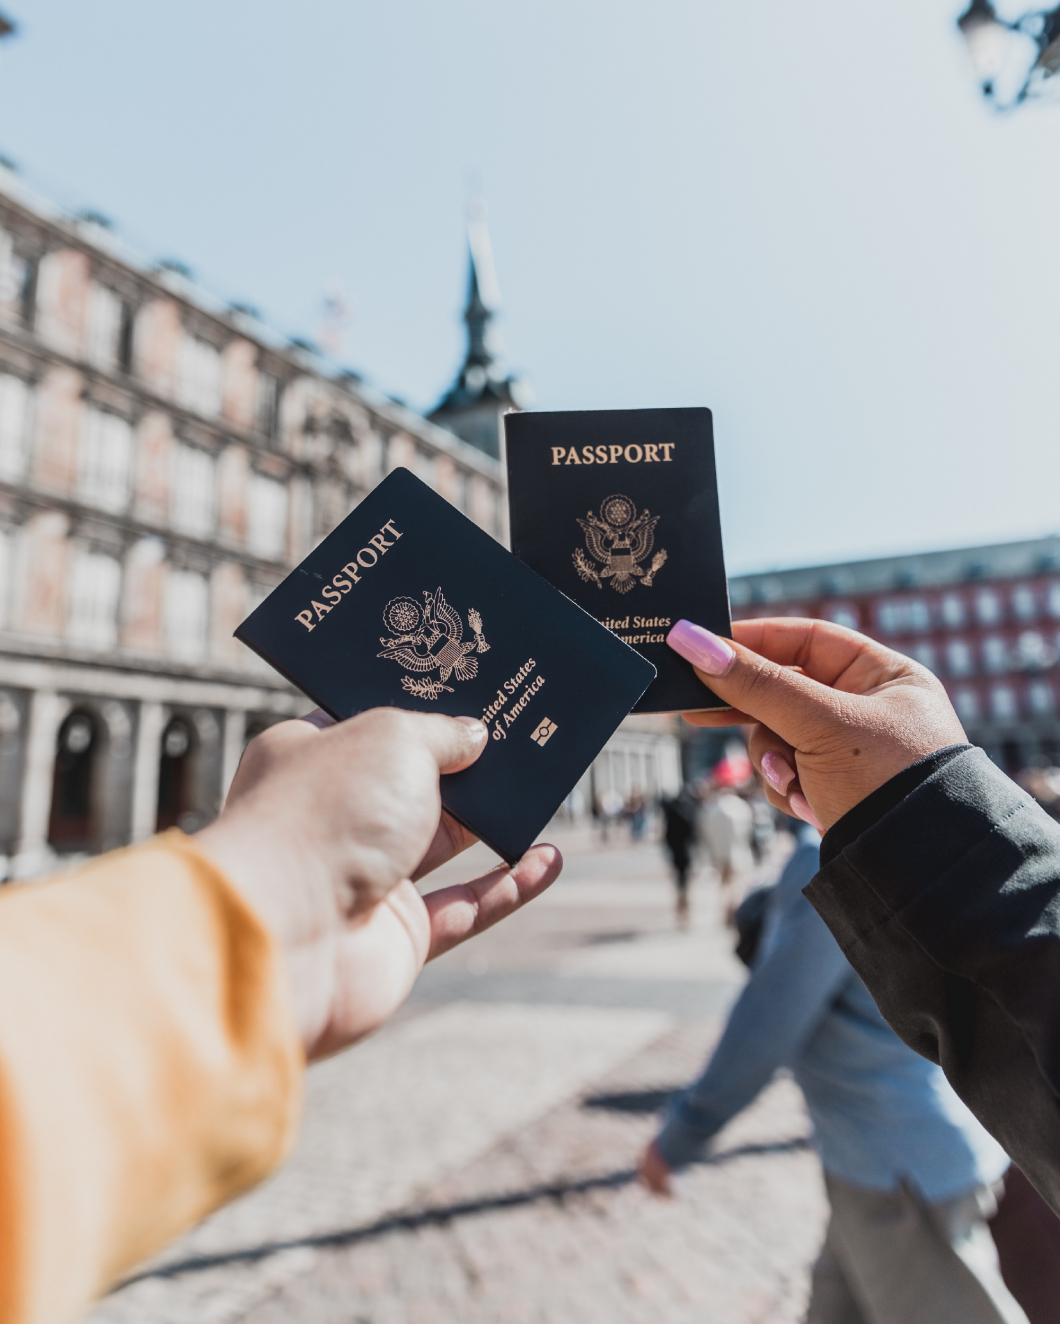 Bevezetik az amerikai útlevelekben a harmadik nemet